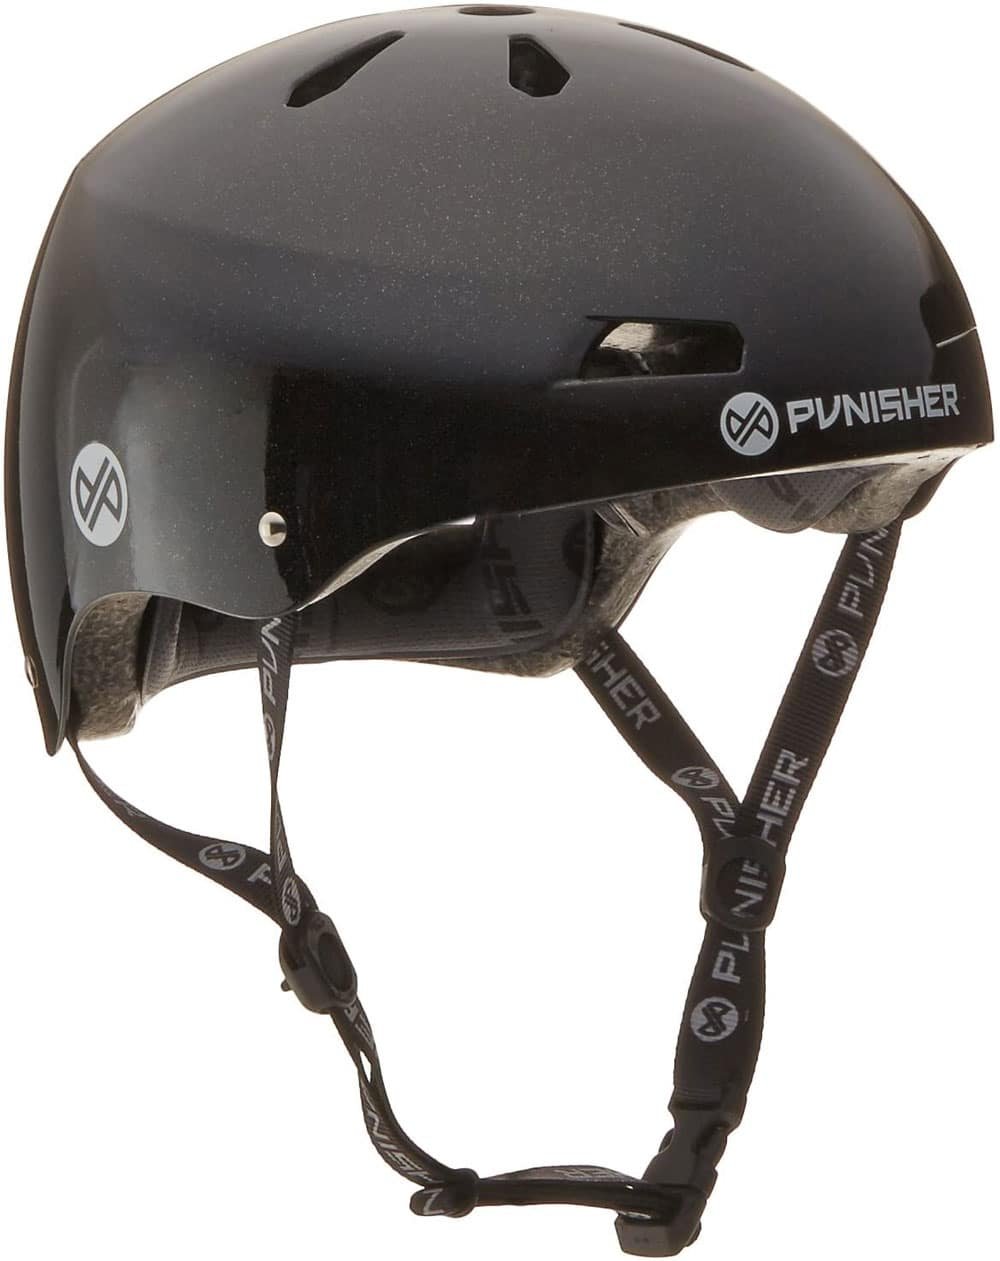 Punisher Skateboard Pro Series 13-Vent Helmet